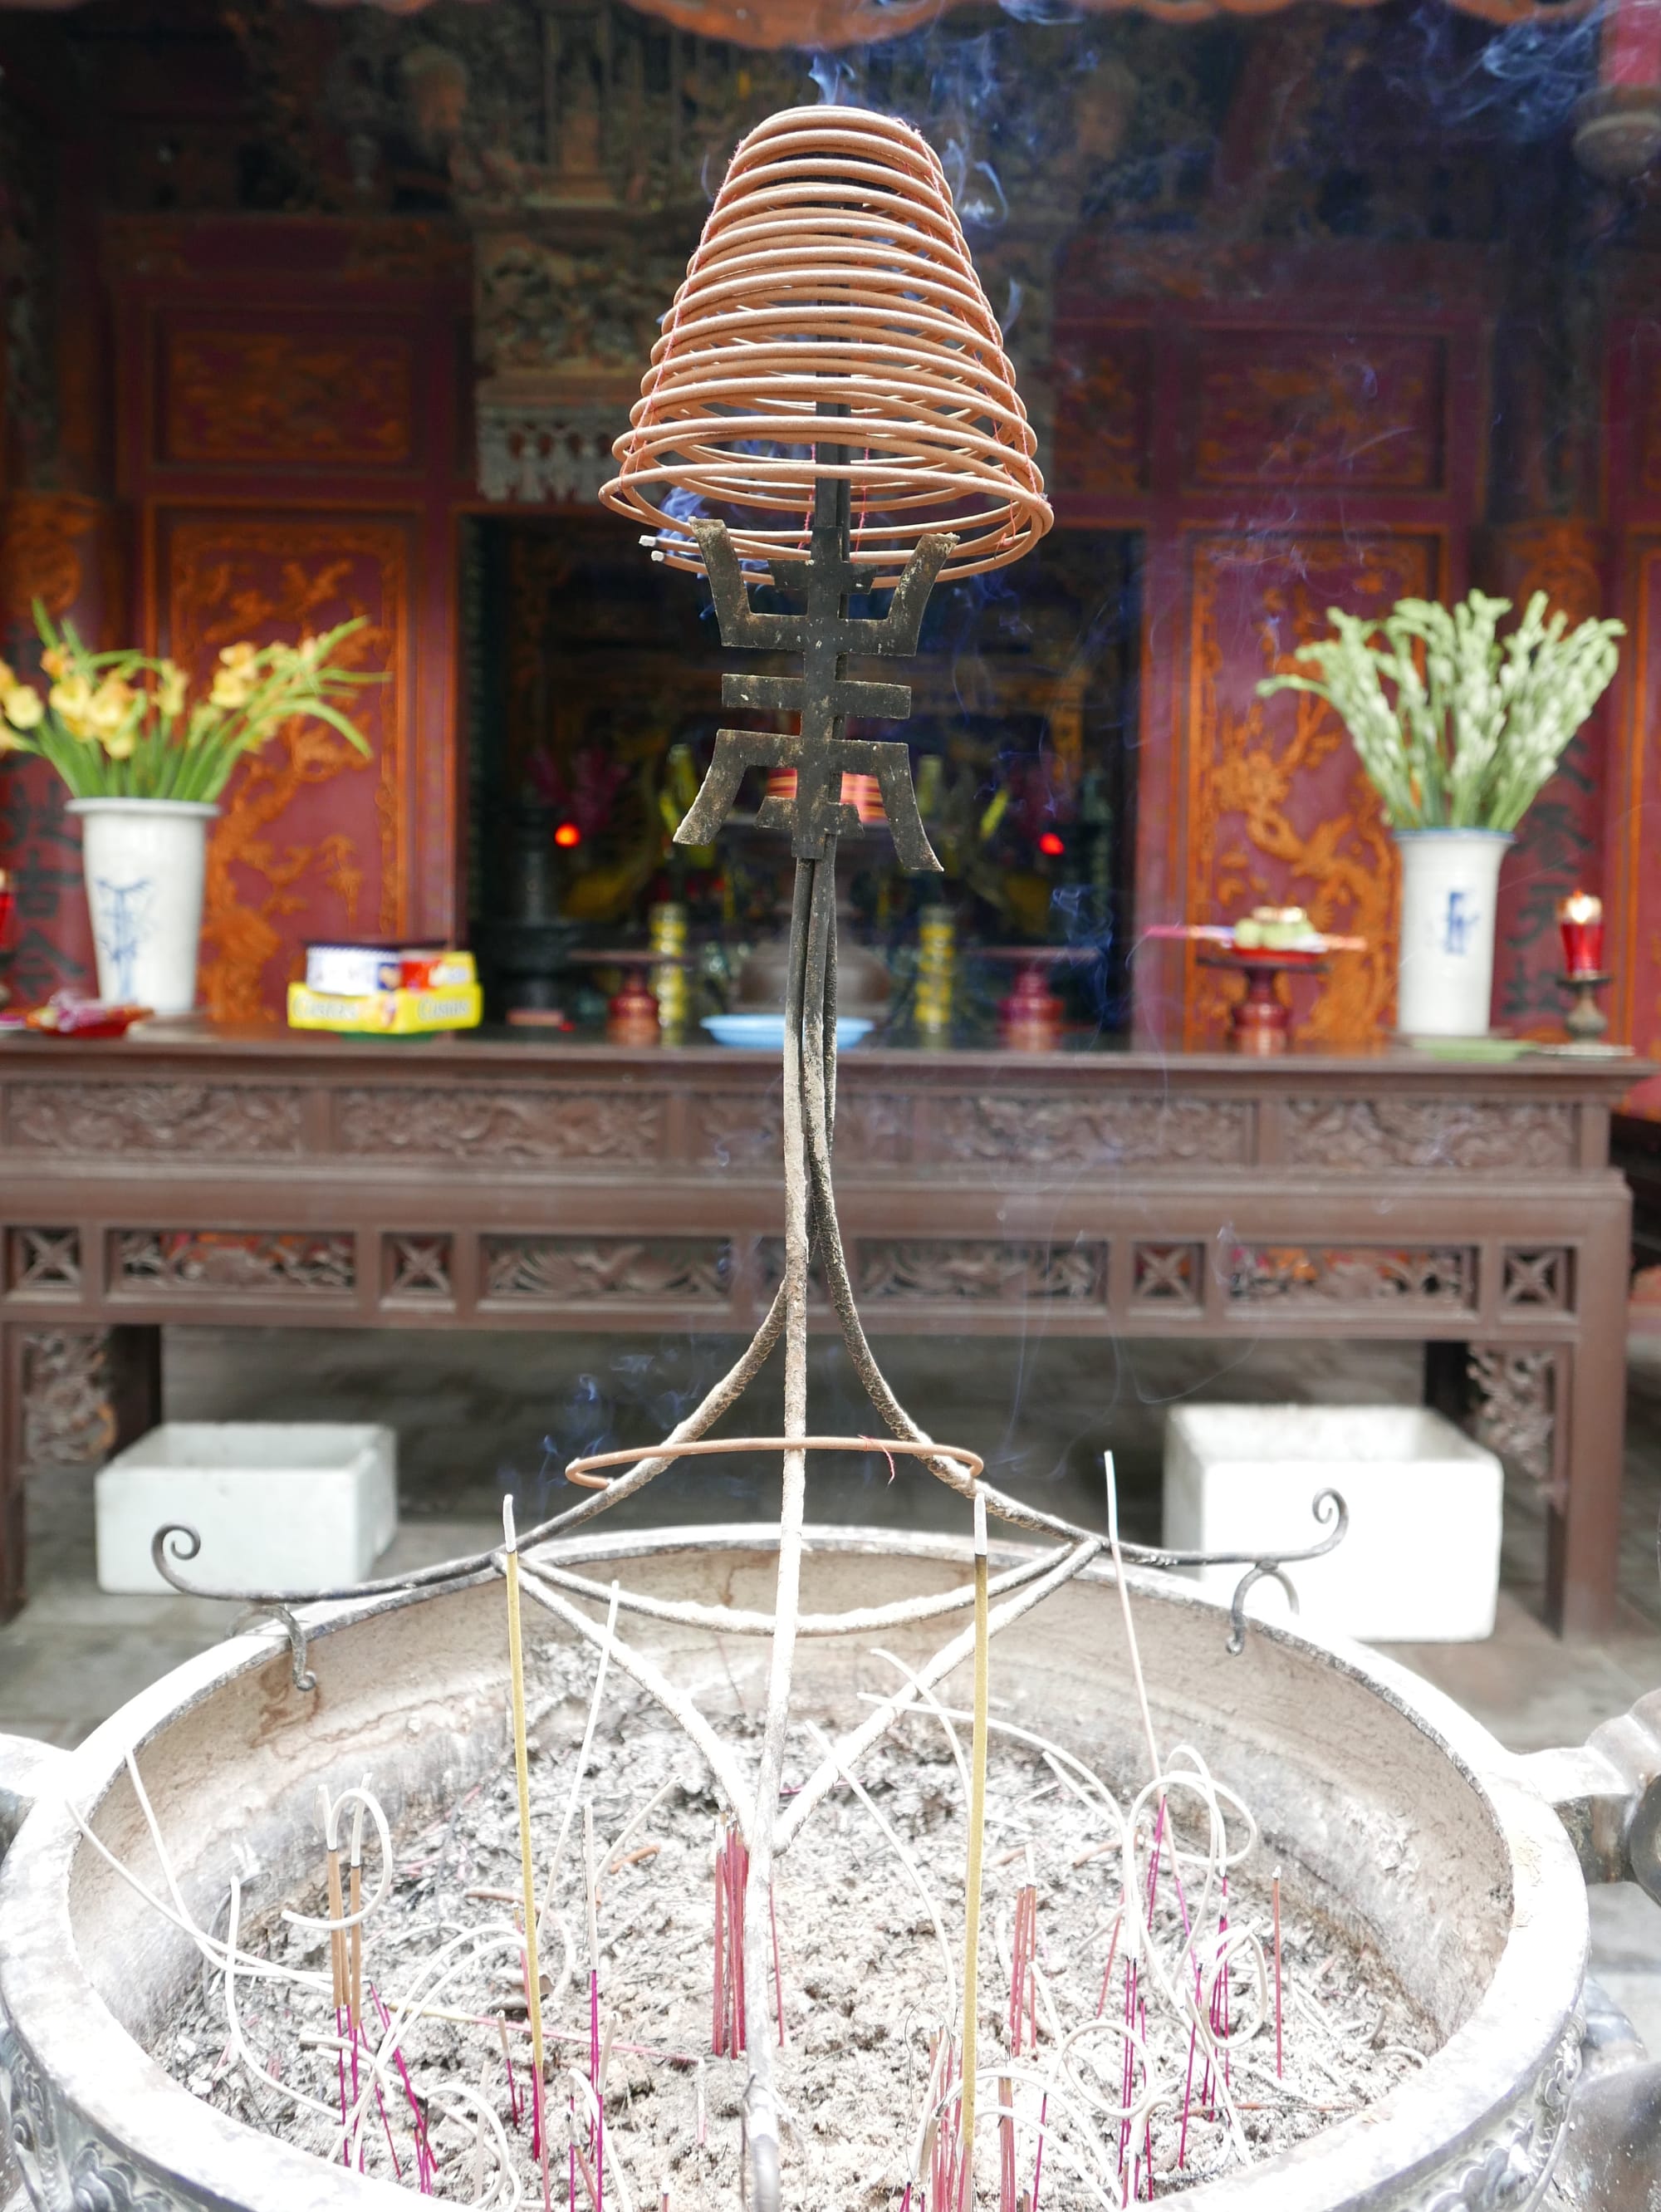 Photo by Author — Đền Quán Thánh (Quan Thanh Temple), 1 Thanh Niên (cnr. Quán Thánh), Quận Ba Đình, Thành Phố Hà Nội, Hanoi, Vietnam